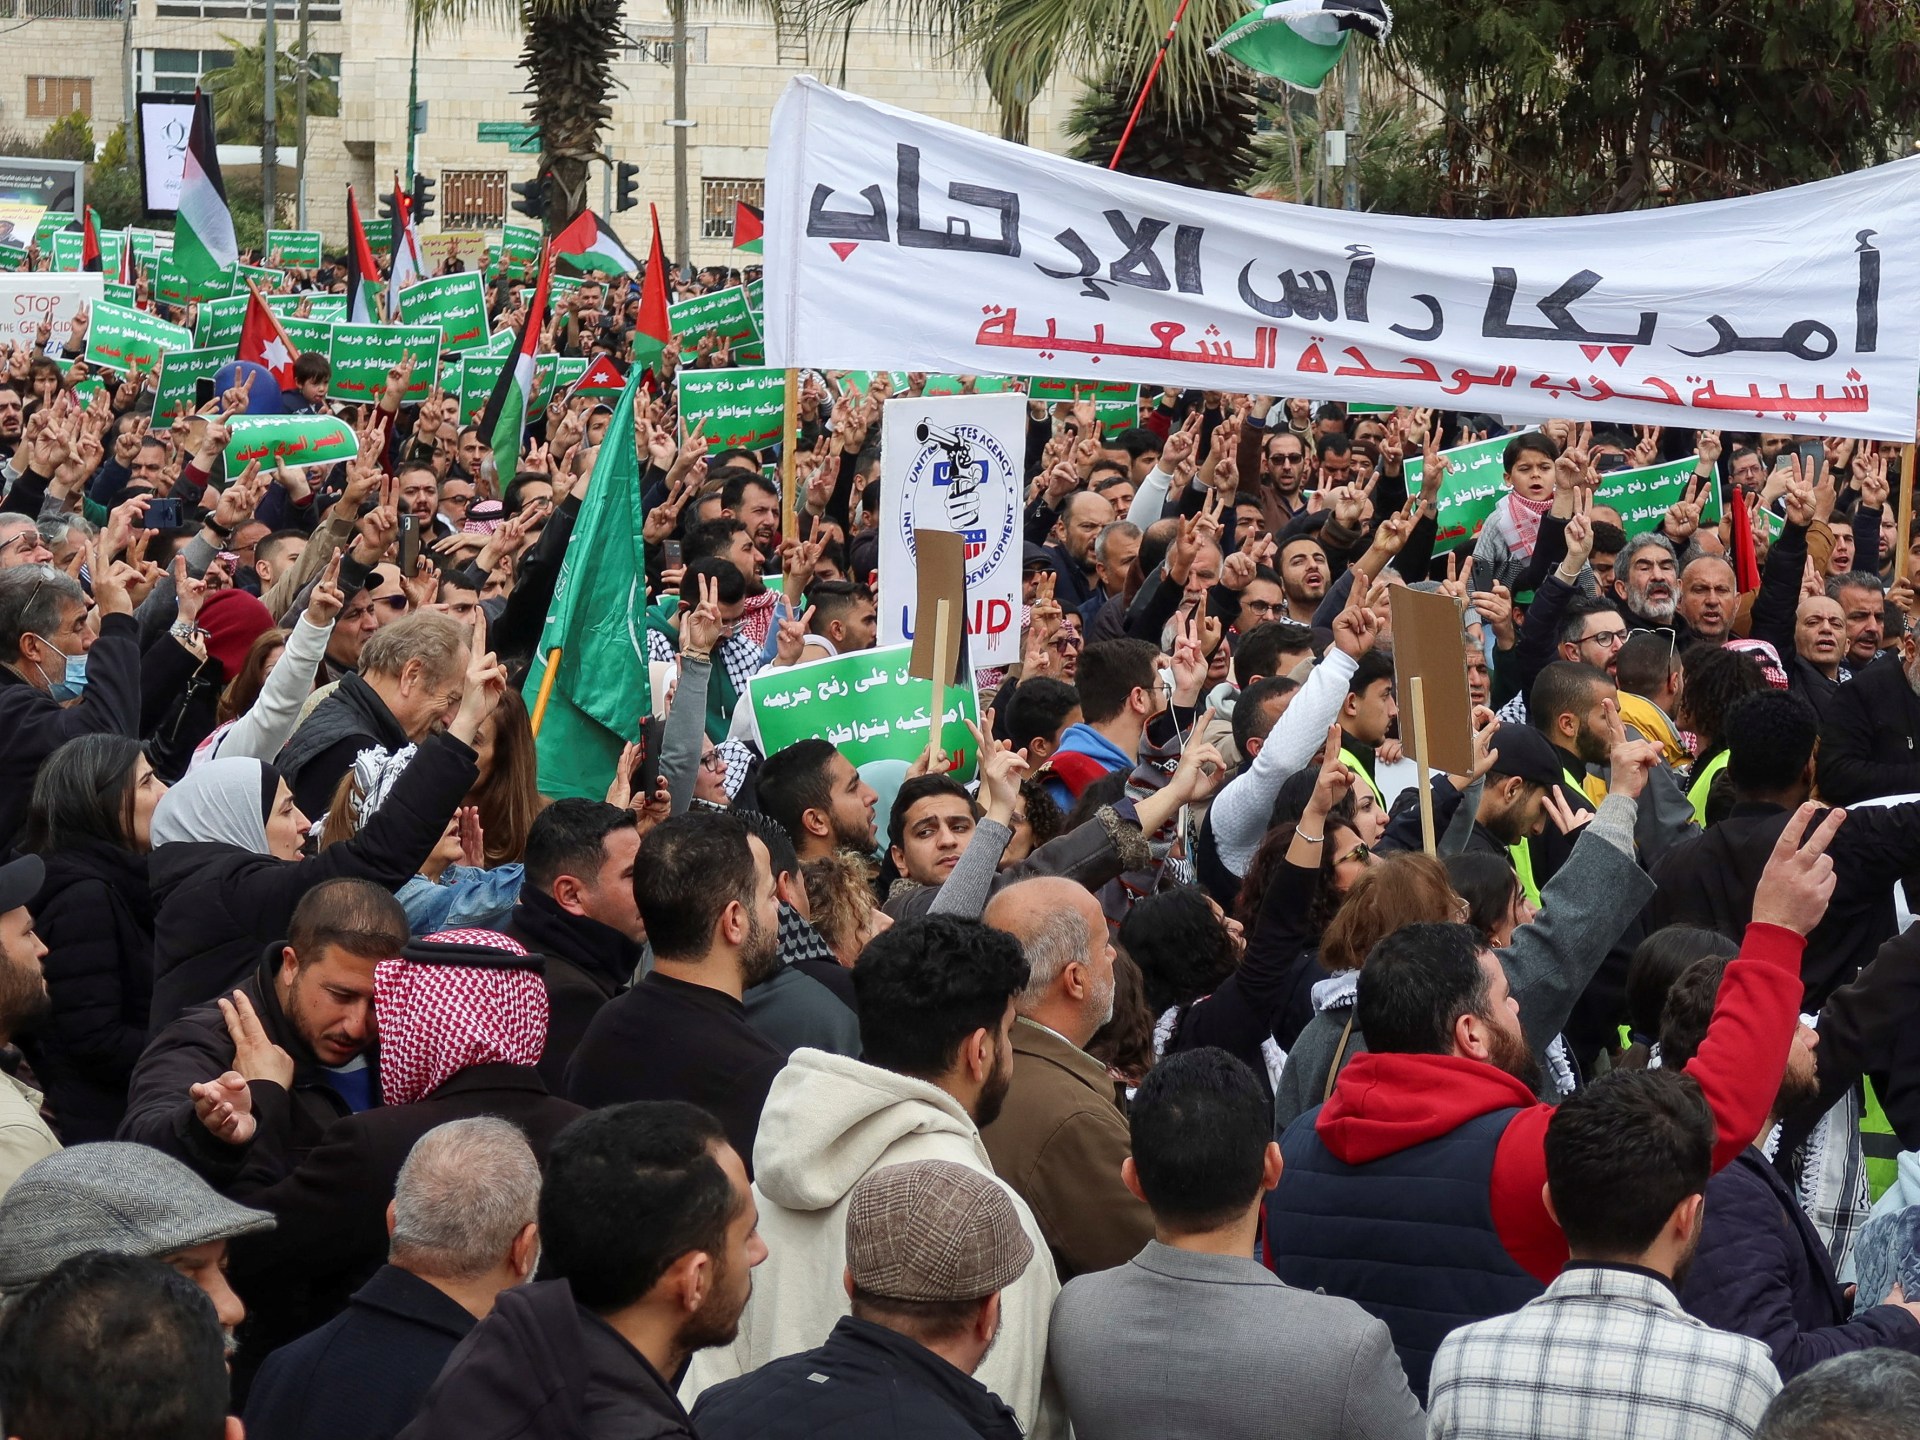 مظاهرات في أنحاء العالم تندد بالمجازر الإسرائيلية ومسيرة ضد “أيباك” | أخبار – البوكس نيوز